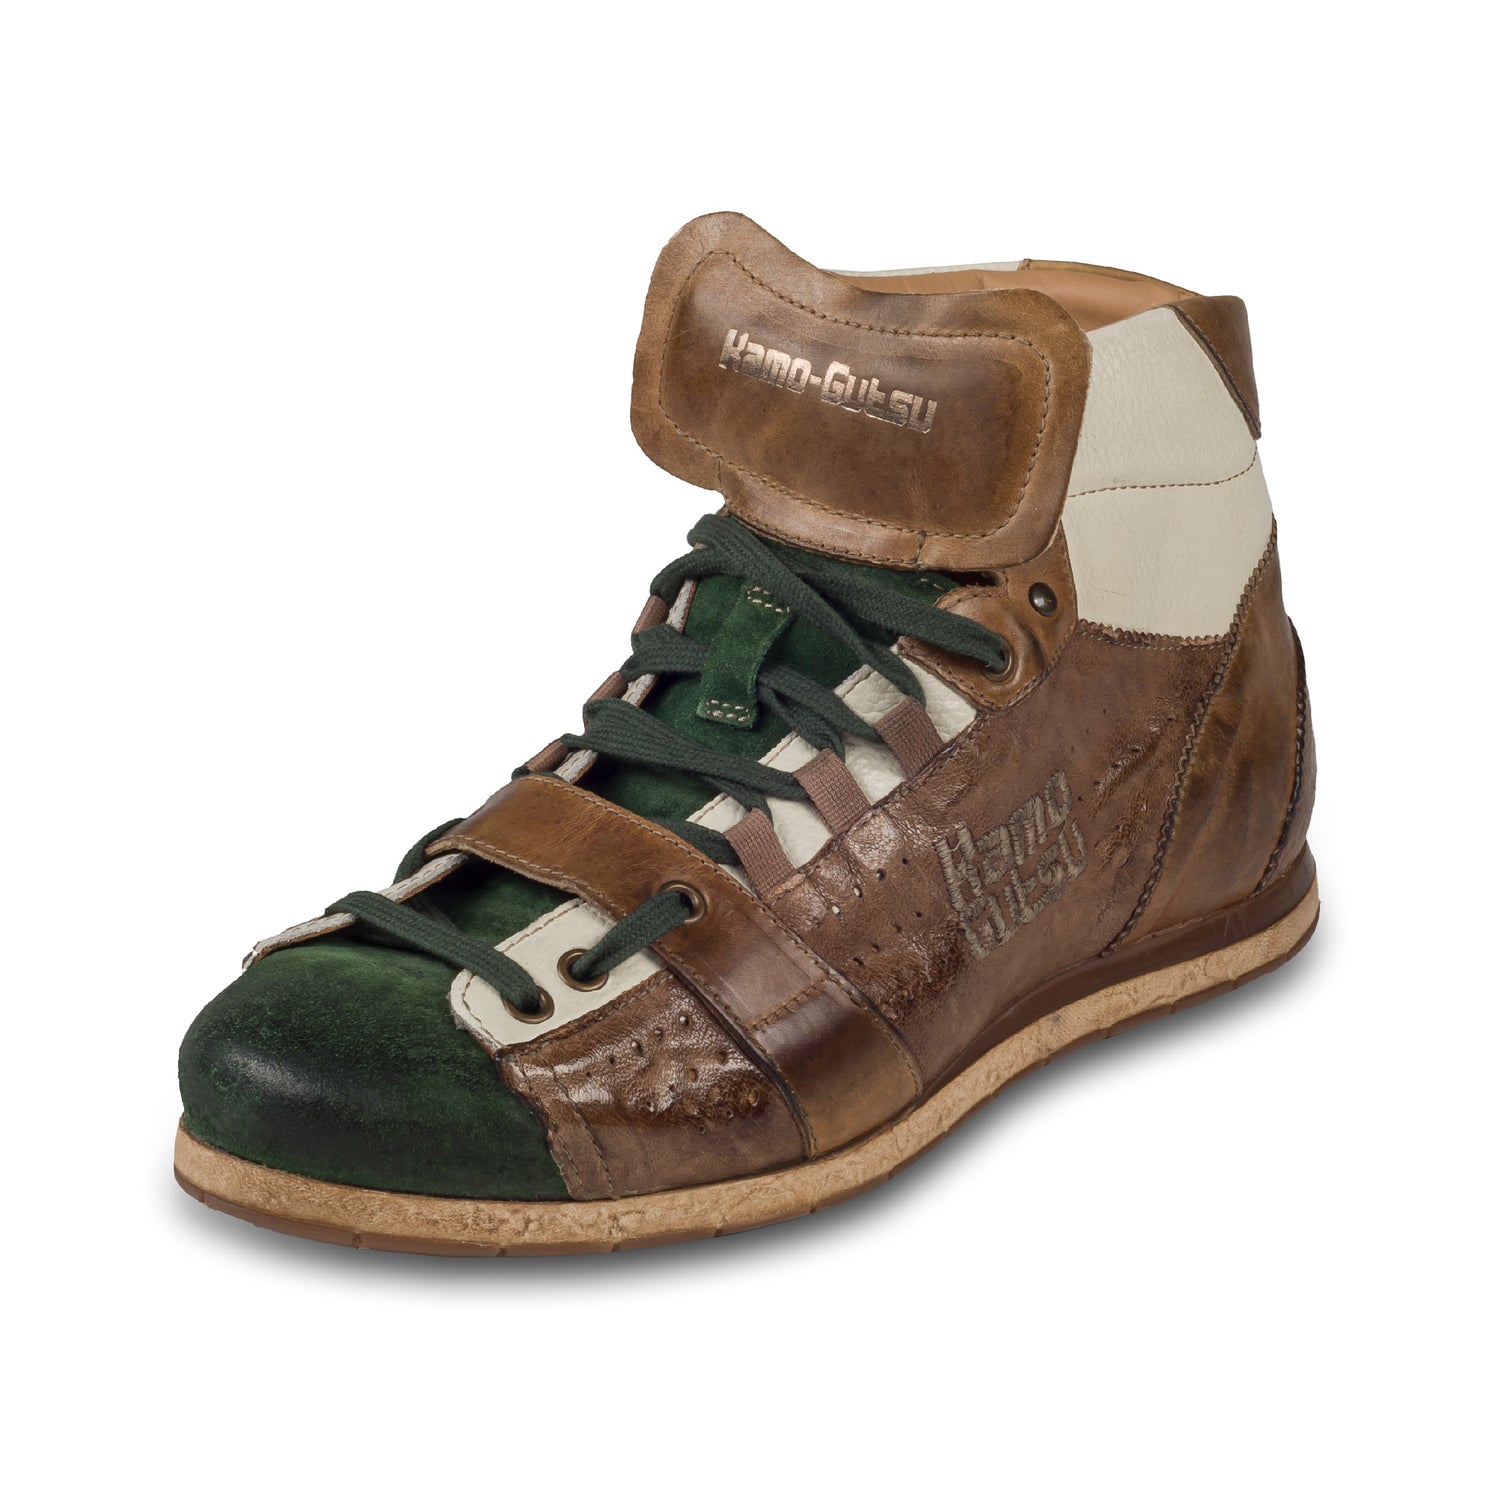 KAMO-GUTSU Italienische Herren Leder Sneaker Stiefel, braun/grün, Retro-Optik, High-Top, Modell TIFO-105 verde / taupe, Handgefertigt in Italien. Handgefertigt. Schräge Ansicht linker Schuh.